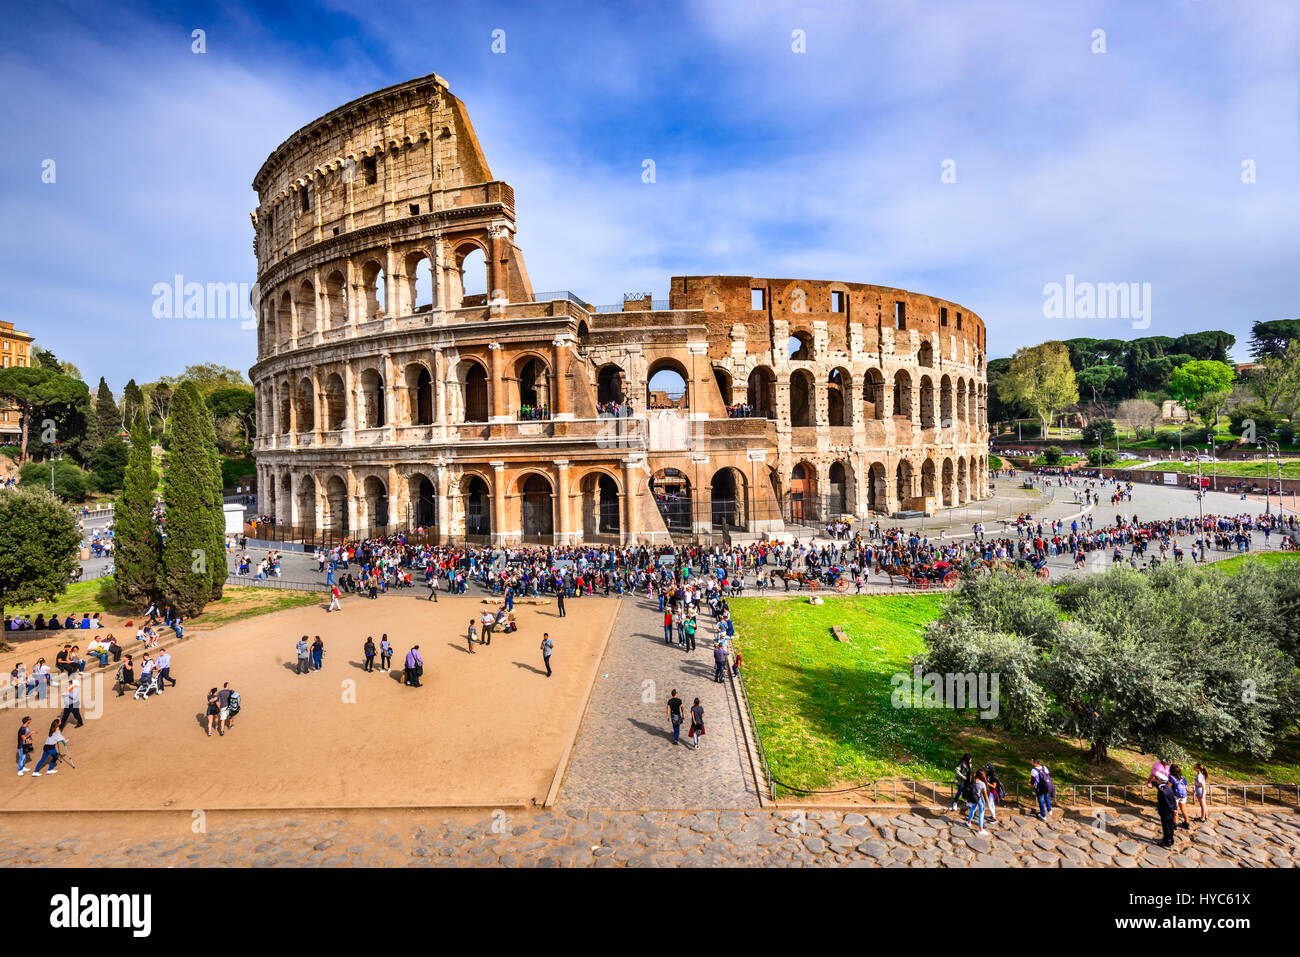 Rom, Italien - 3 April 2016: Colosseum (Kolosseum), das Amphitheater für die Gladiatoren kämpfe im alten Rom, römische Reich. Stockfoto